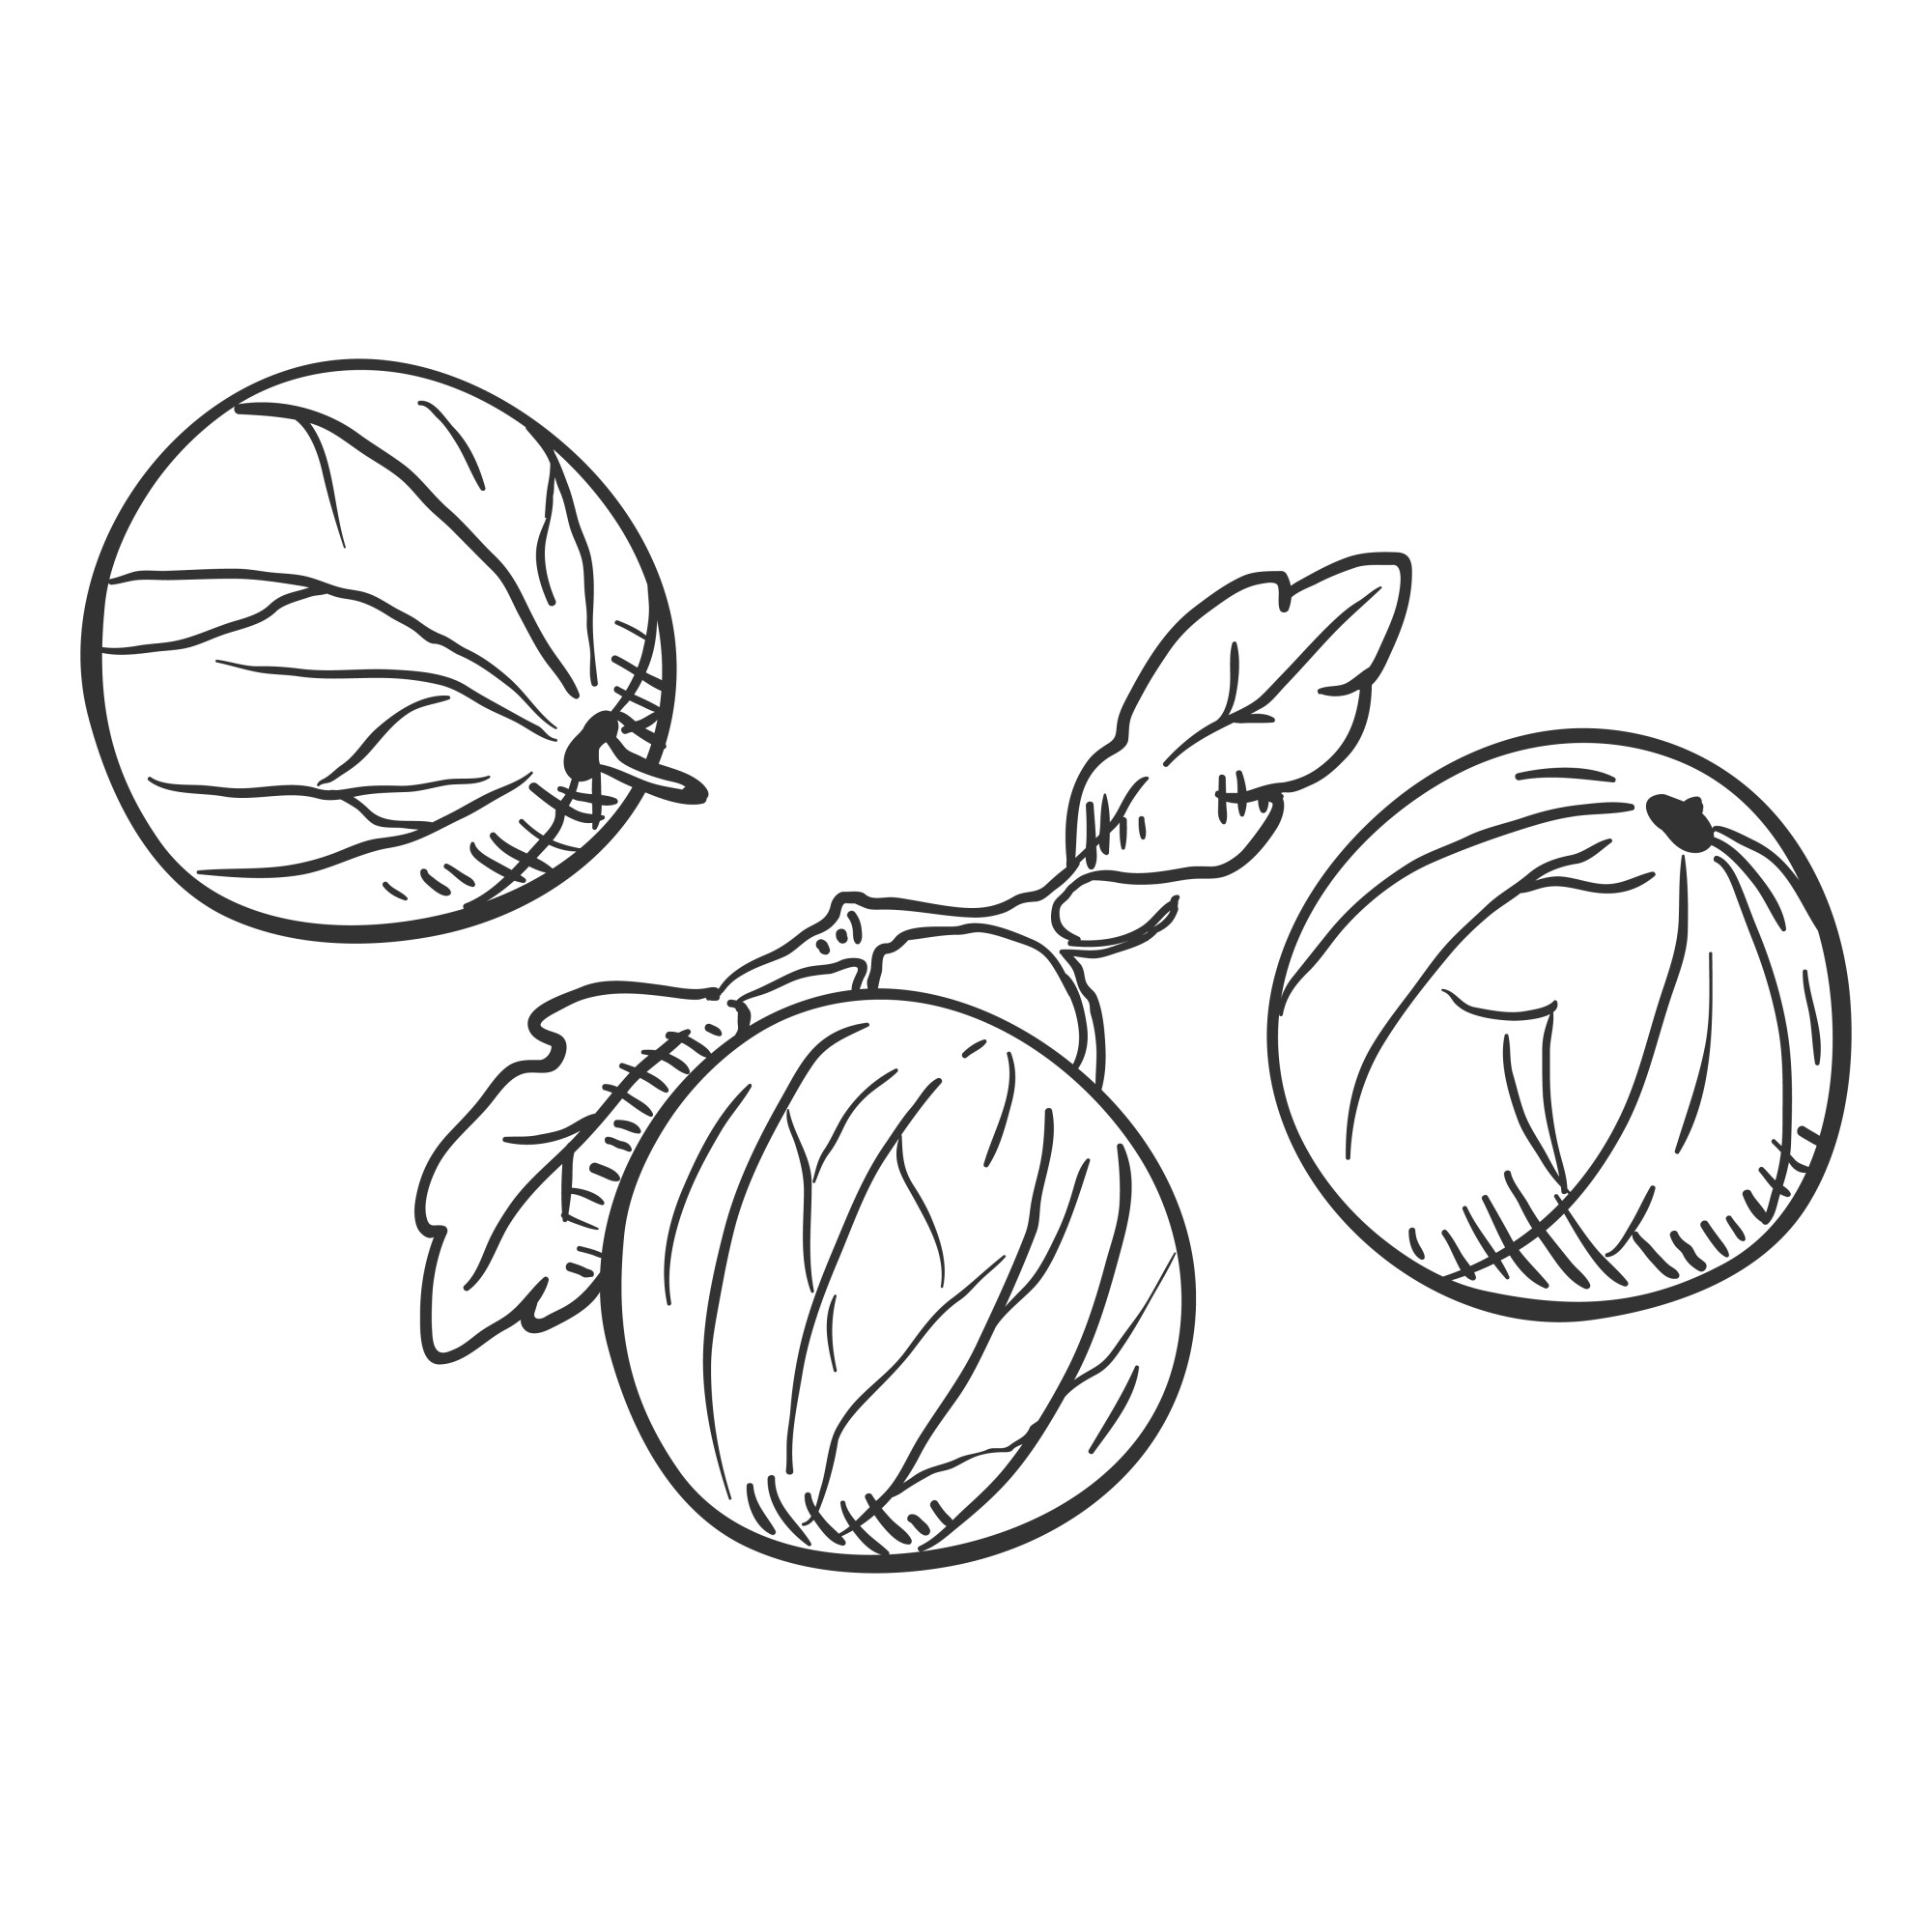 Раскраска для детей: ягоды спелого крыжовника